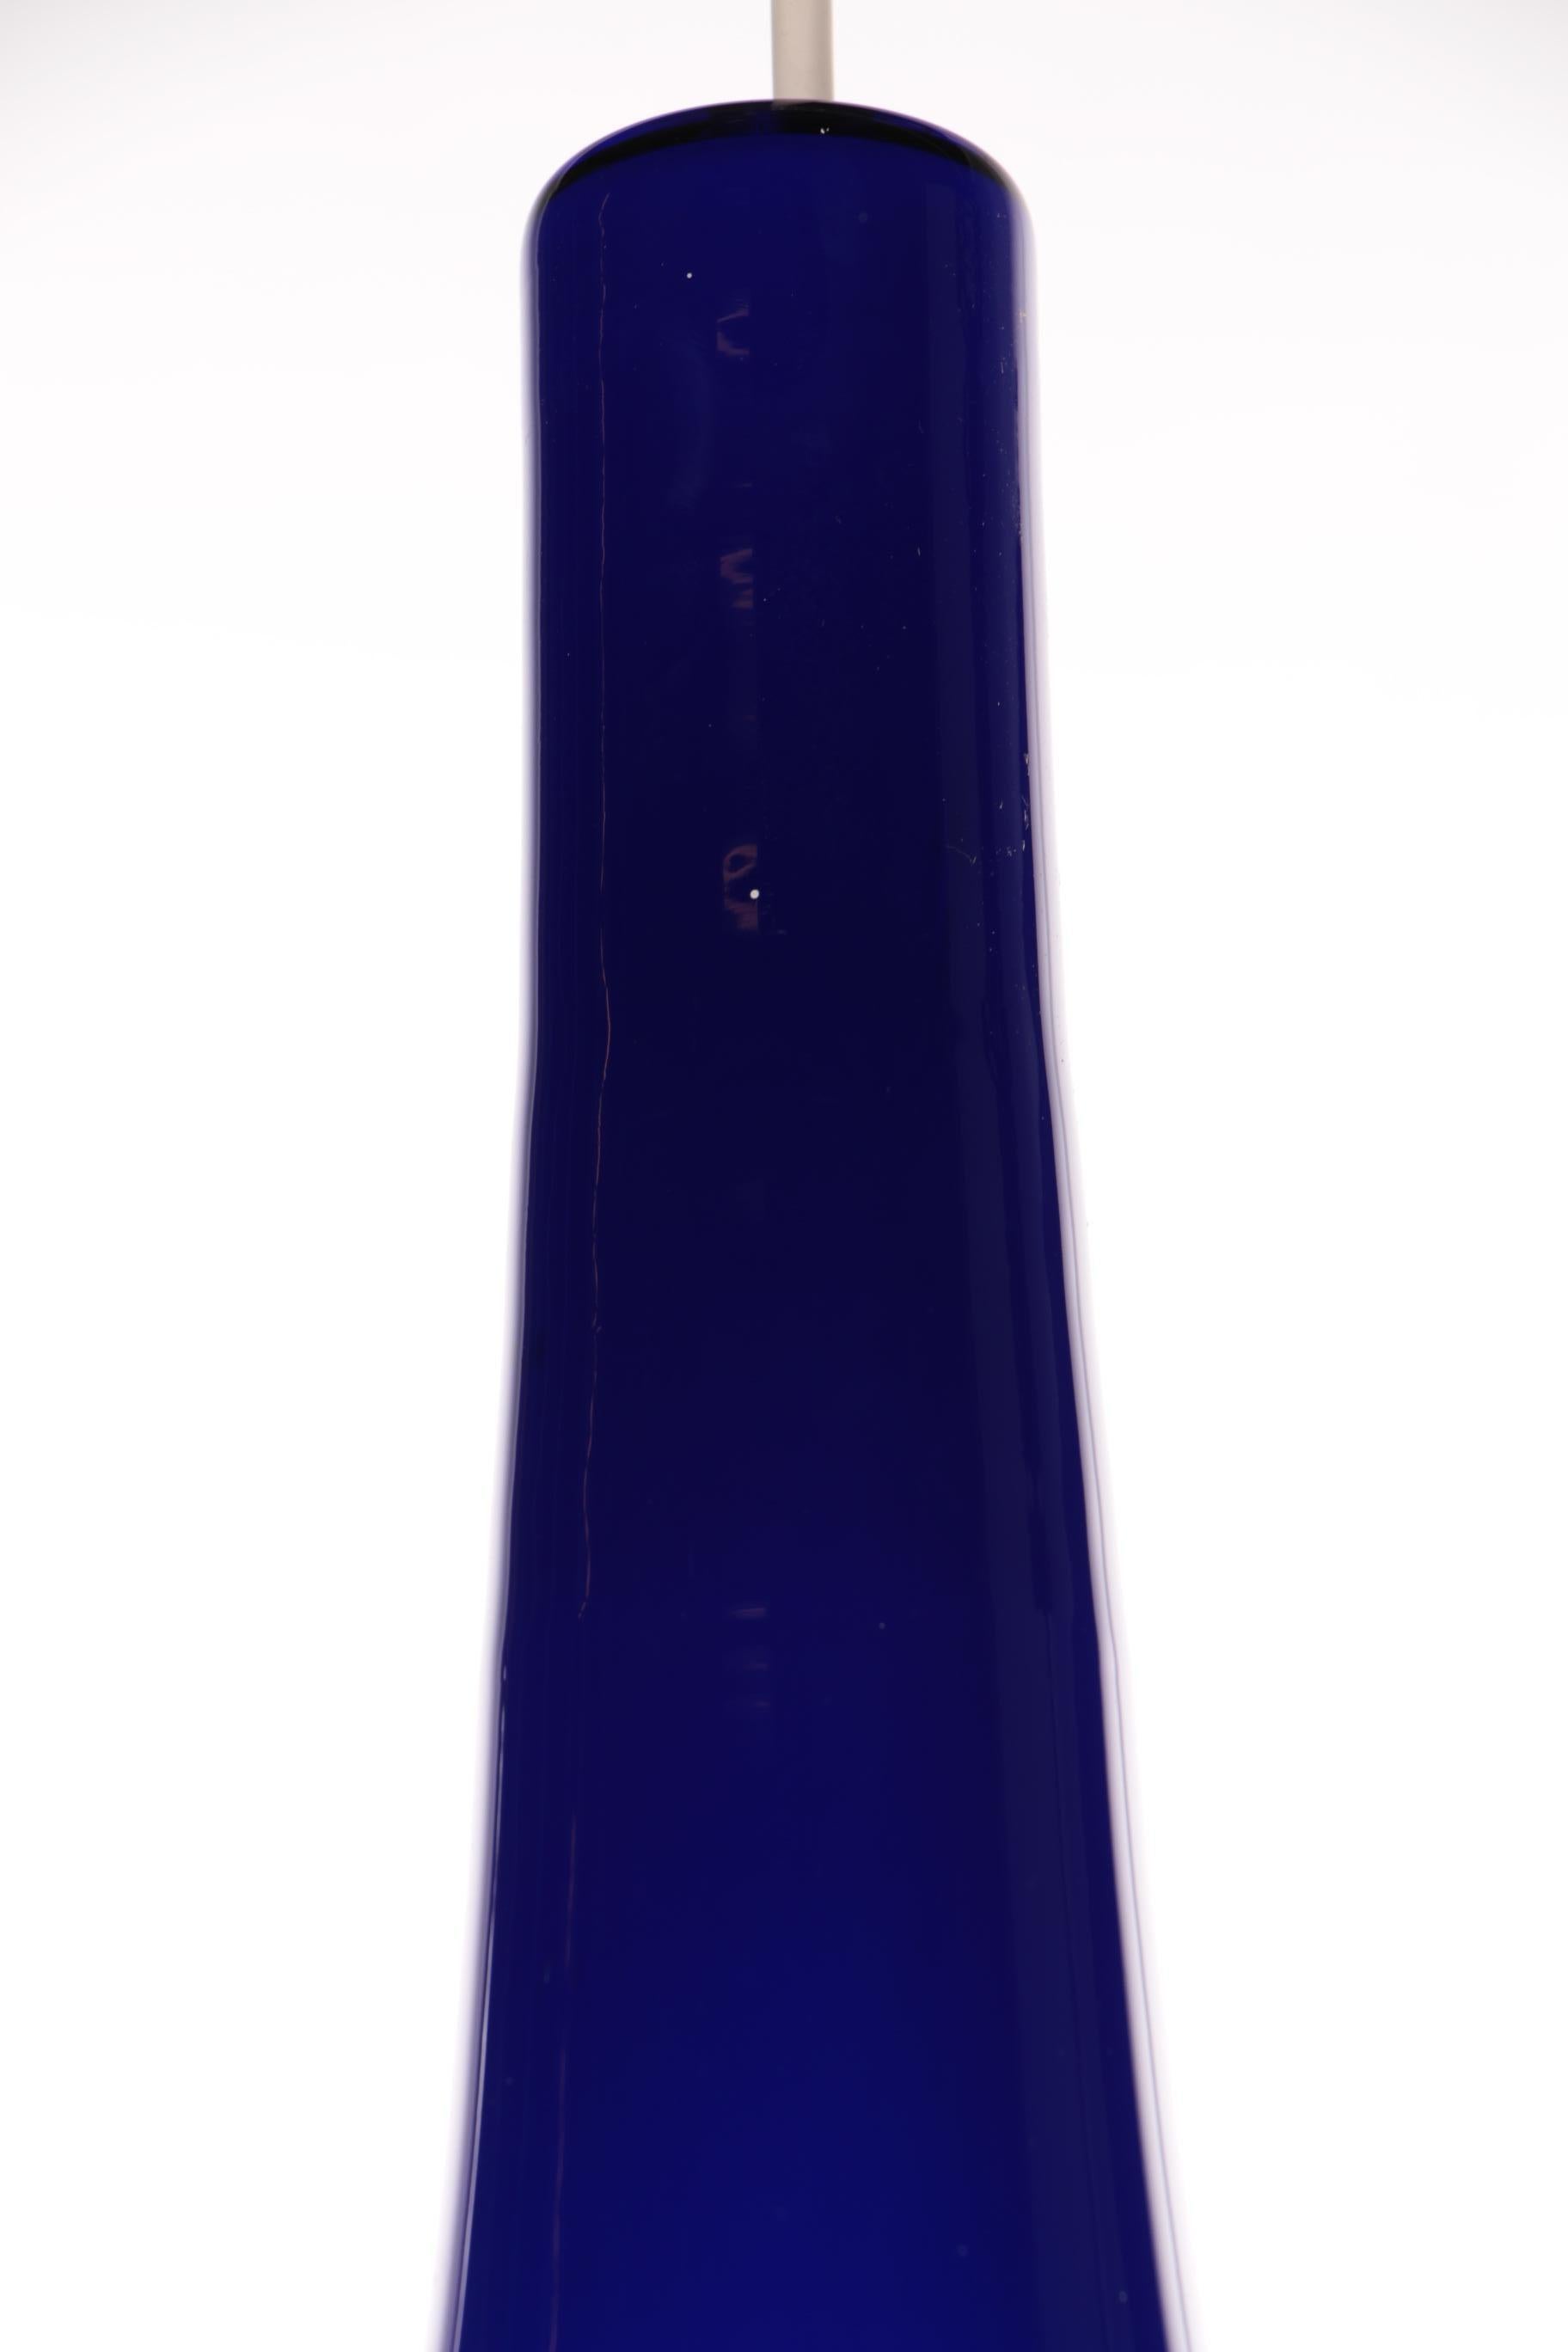 Holmegaard Glass Hanging Lamp Design Louis Poulsen, 1960 Denmark For Sale 2